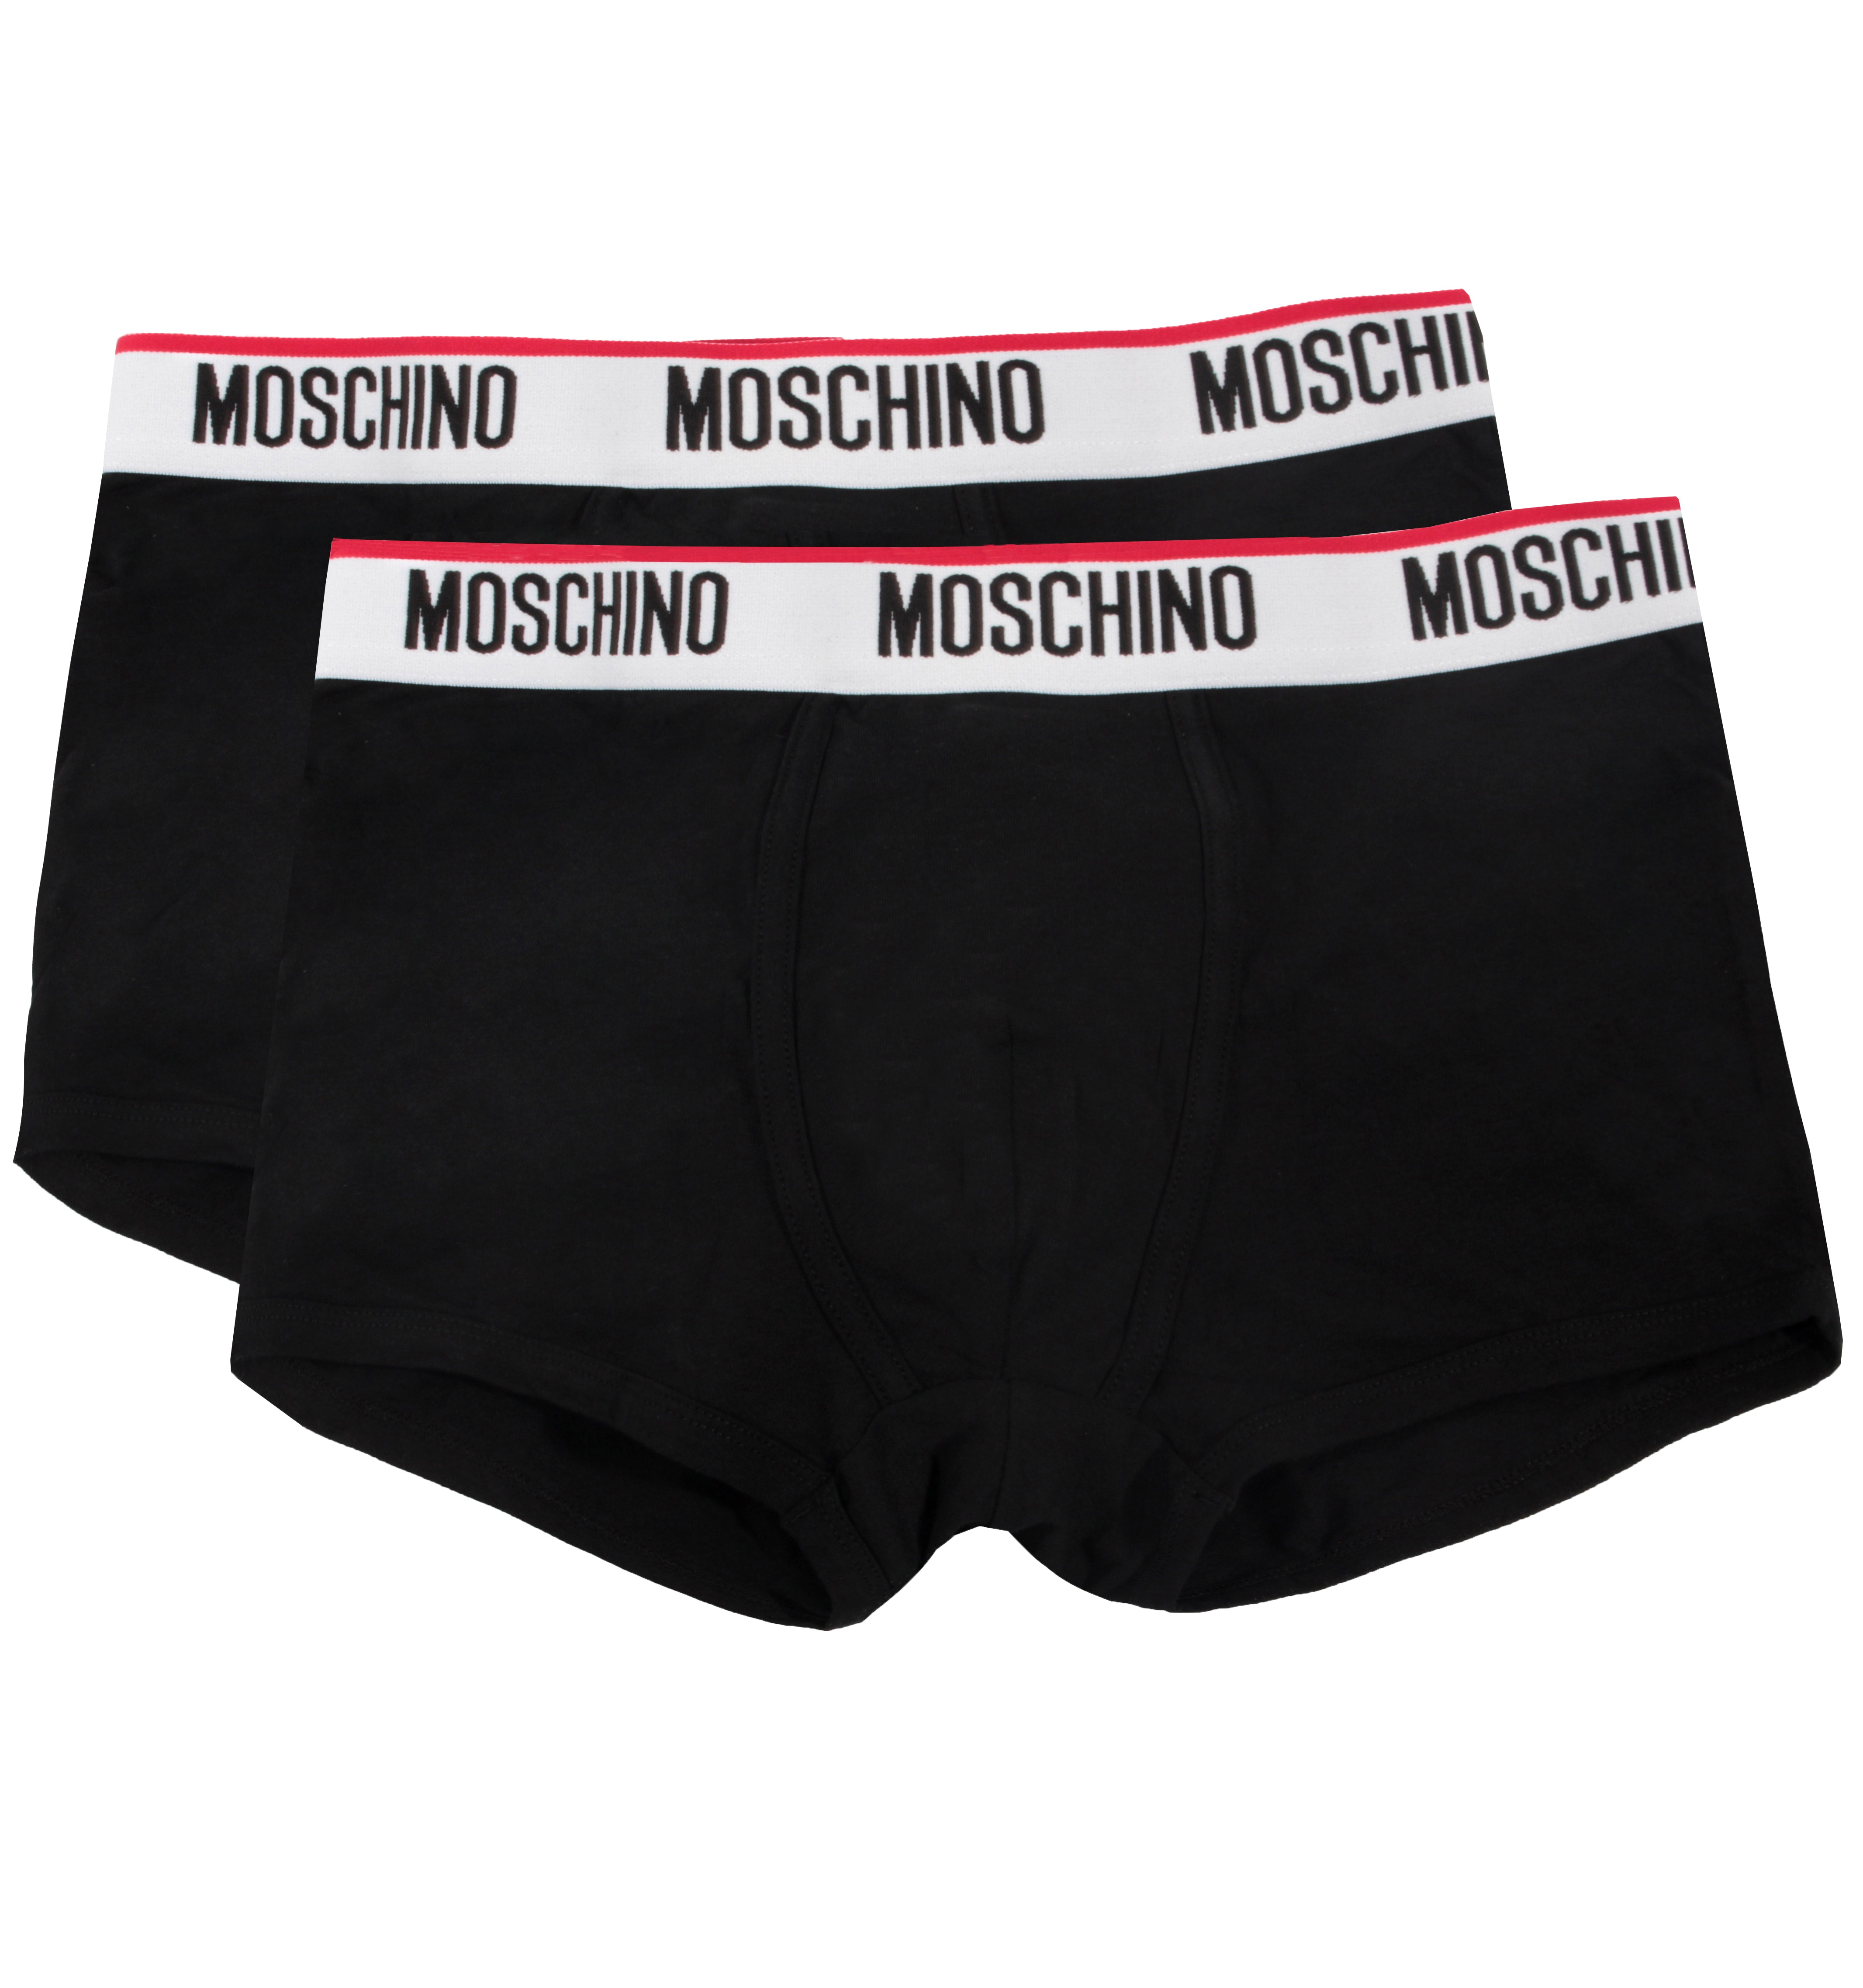 Moschino Underwear